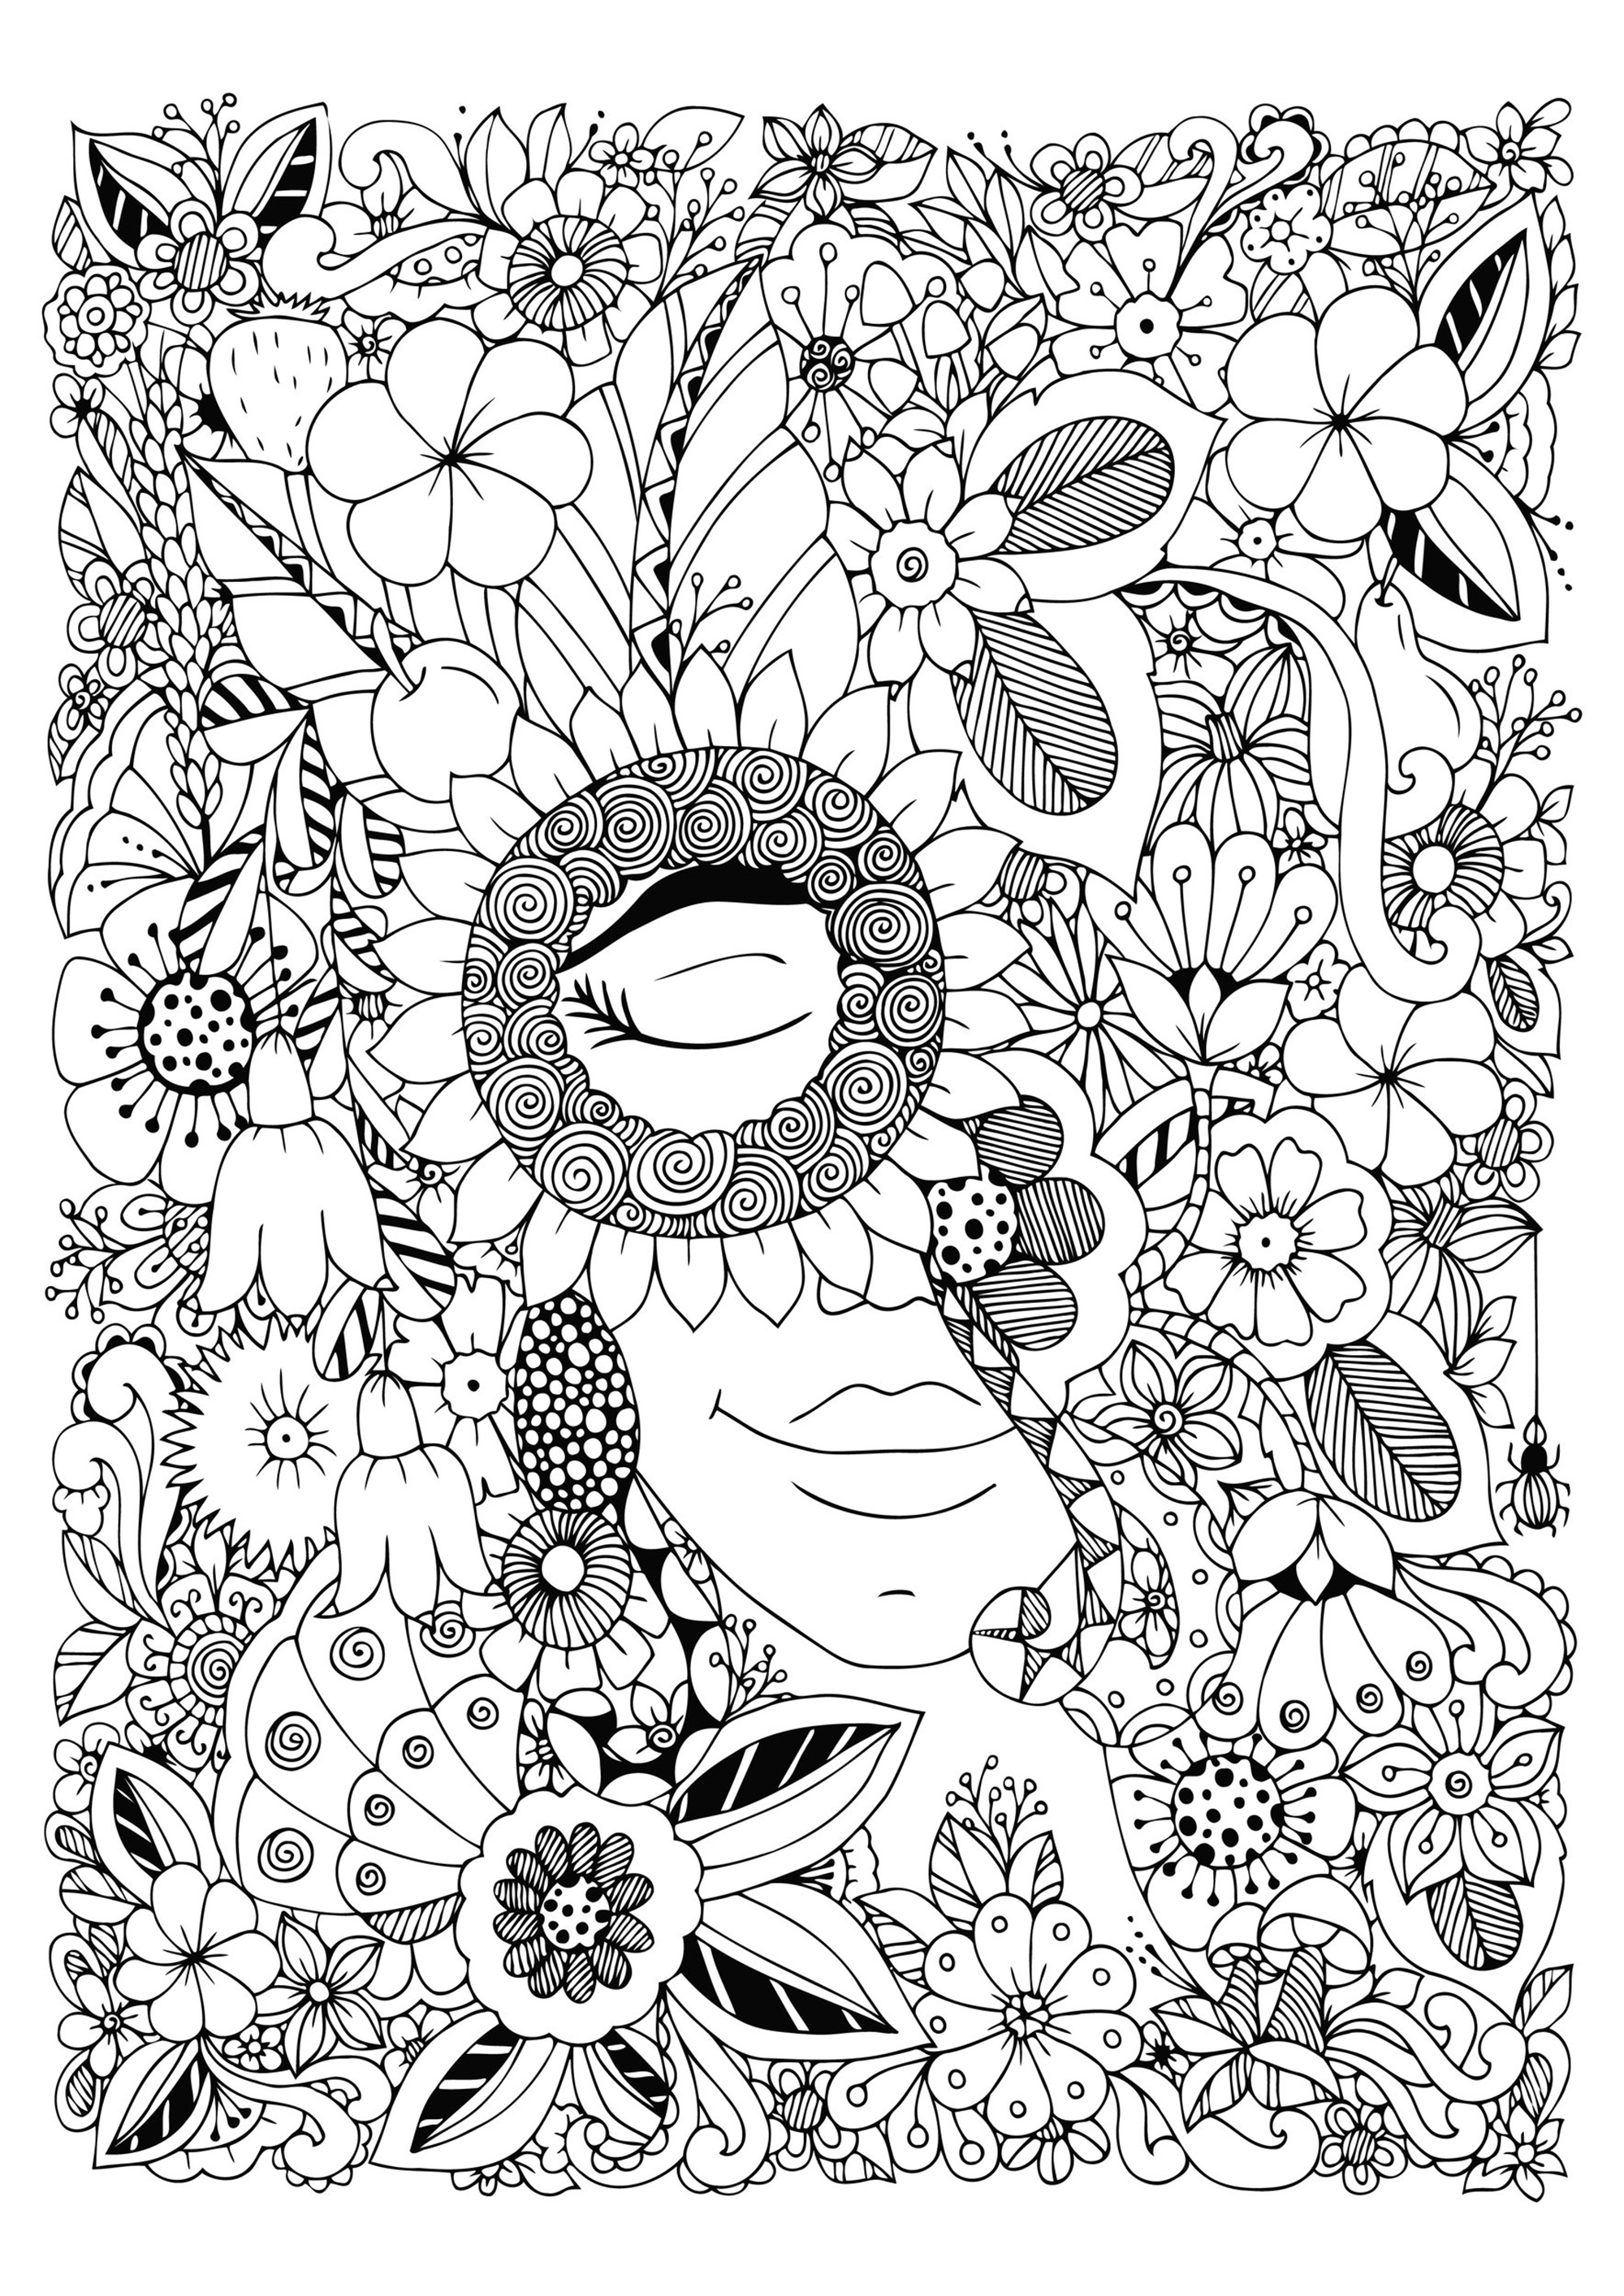 Donna con gli occhi chiusi, nascosta in mezzo a graziosi fiori molto variegati, Artista : Tanvetka   Fonte : 123rf